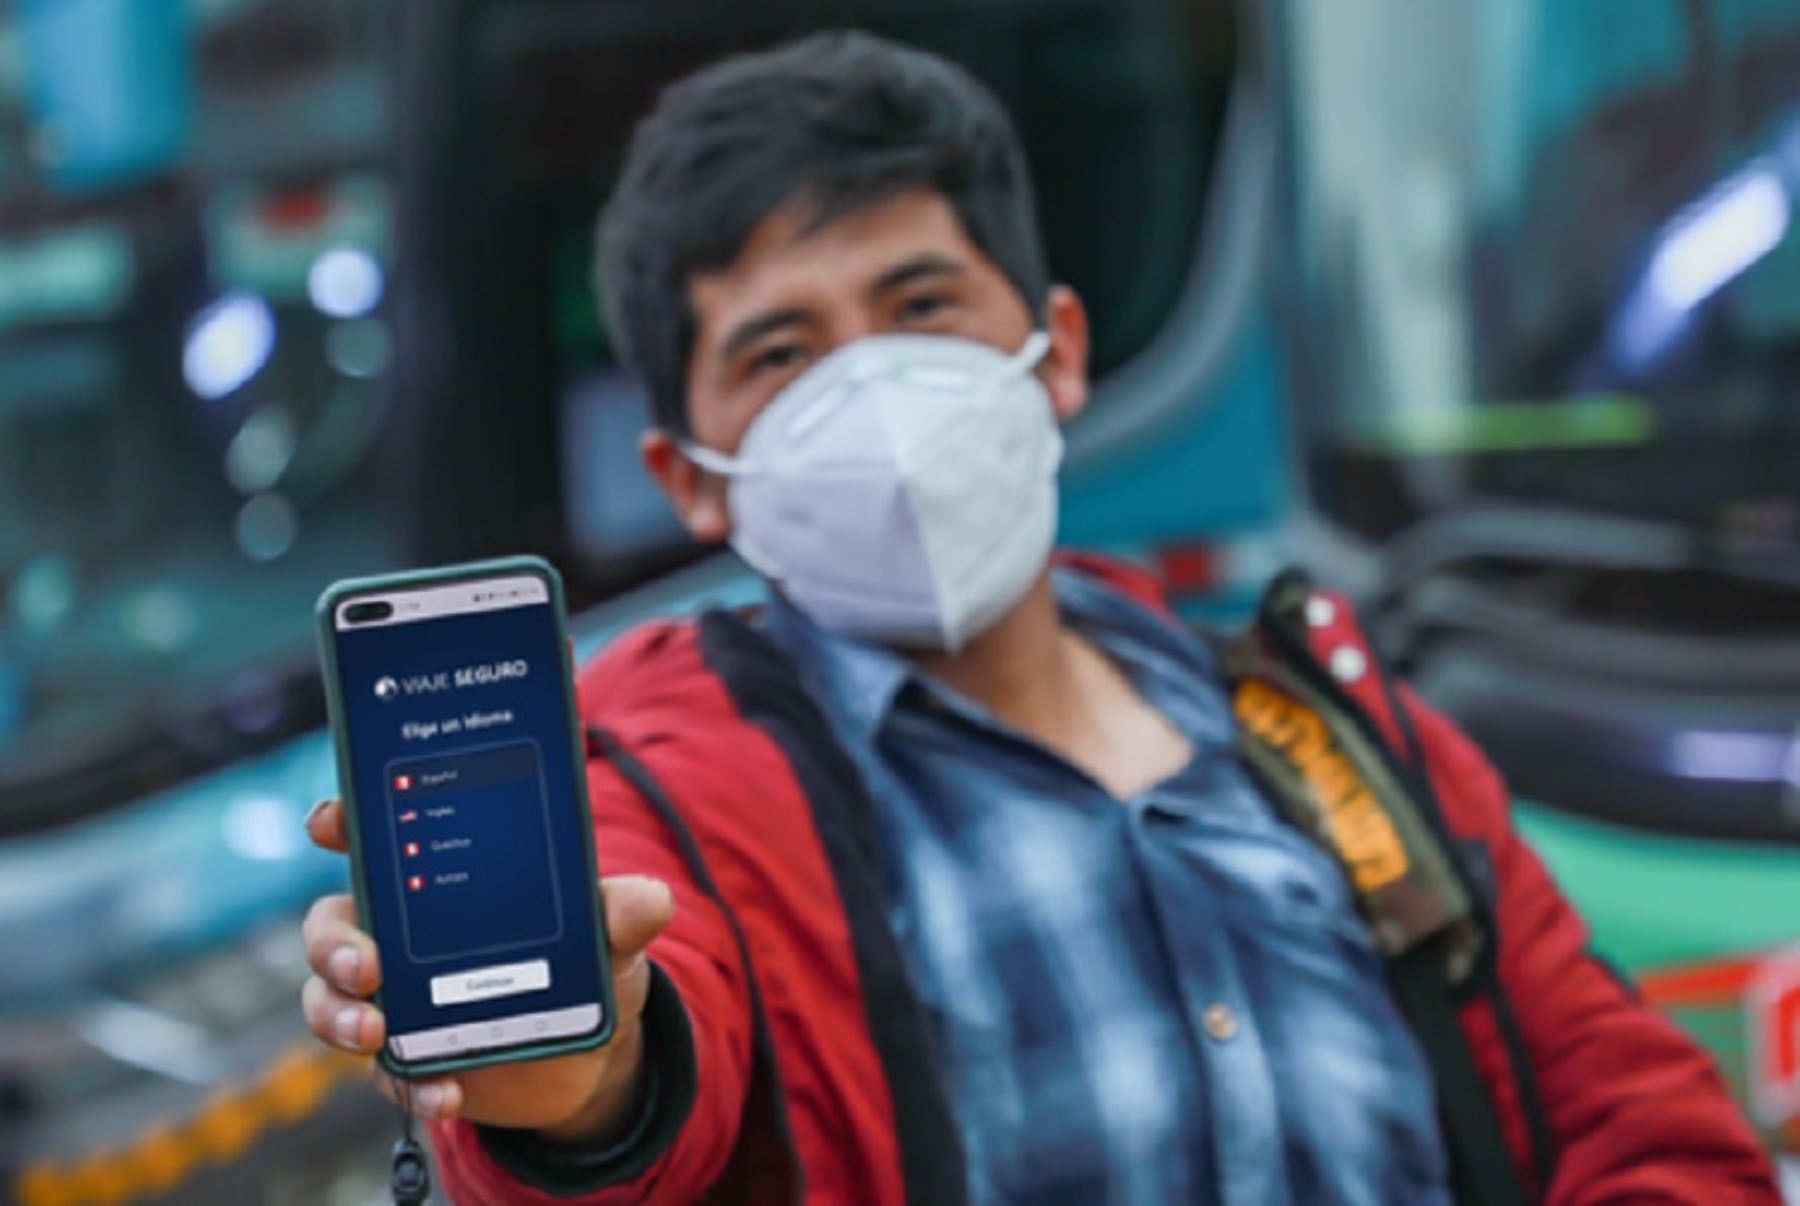 La aplicación Viaje Seguro es sencilla y gratuita y está disponible para los celulares con sistemas iOS y Android. También ofrece a los usuarios la posibilidad de reportar incidencias, monitorear y compartir su viaje en tiempo real.